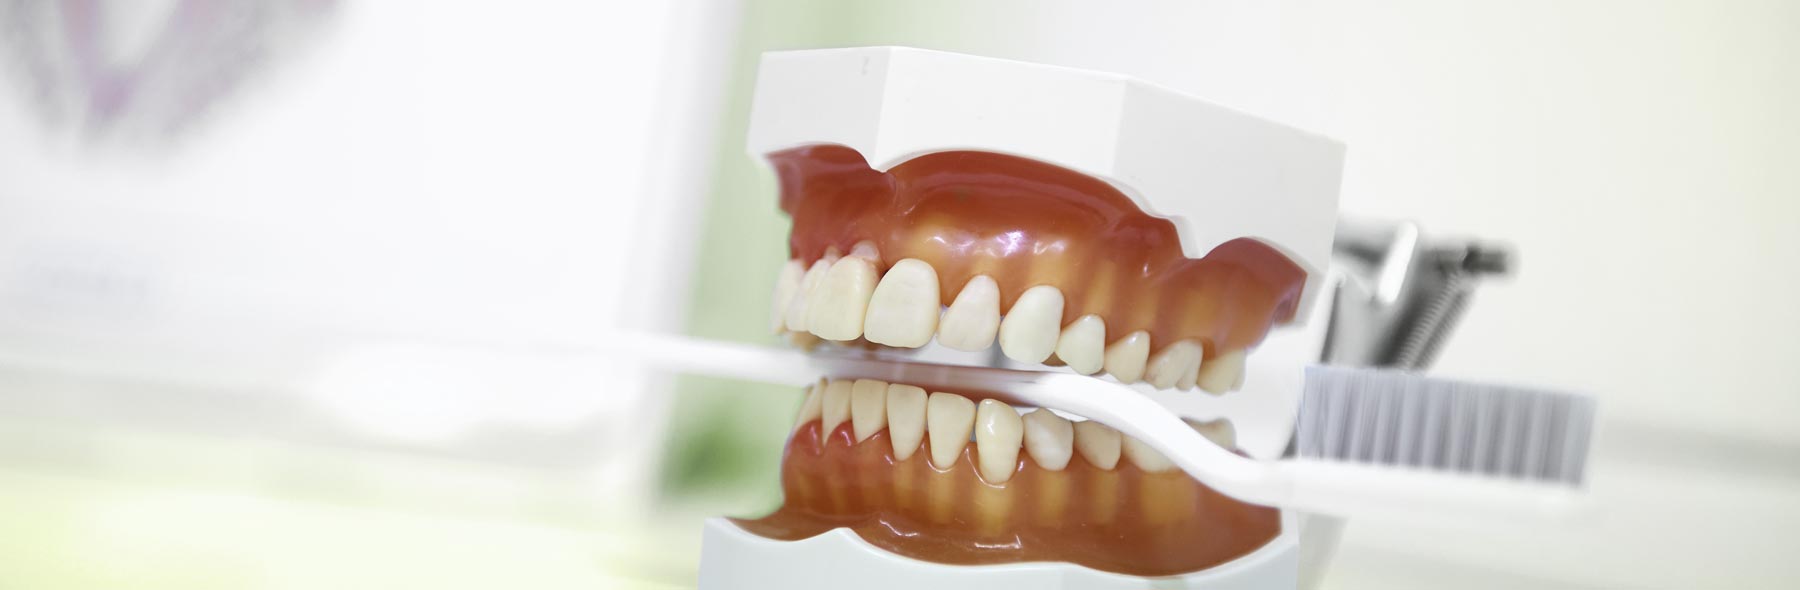 Stilleben in Zahnarztpraxis in Limburg